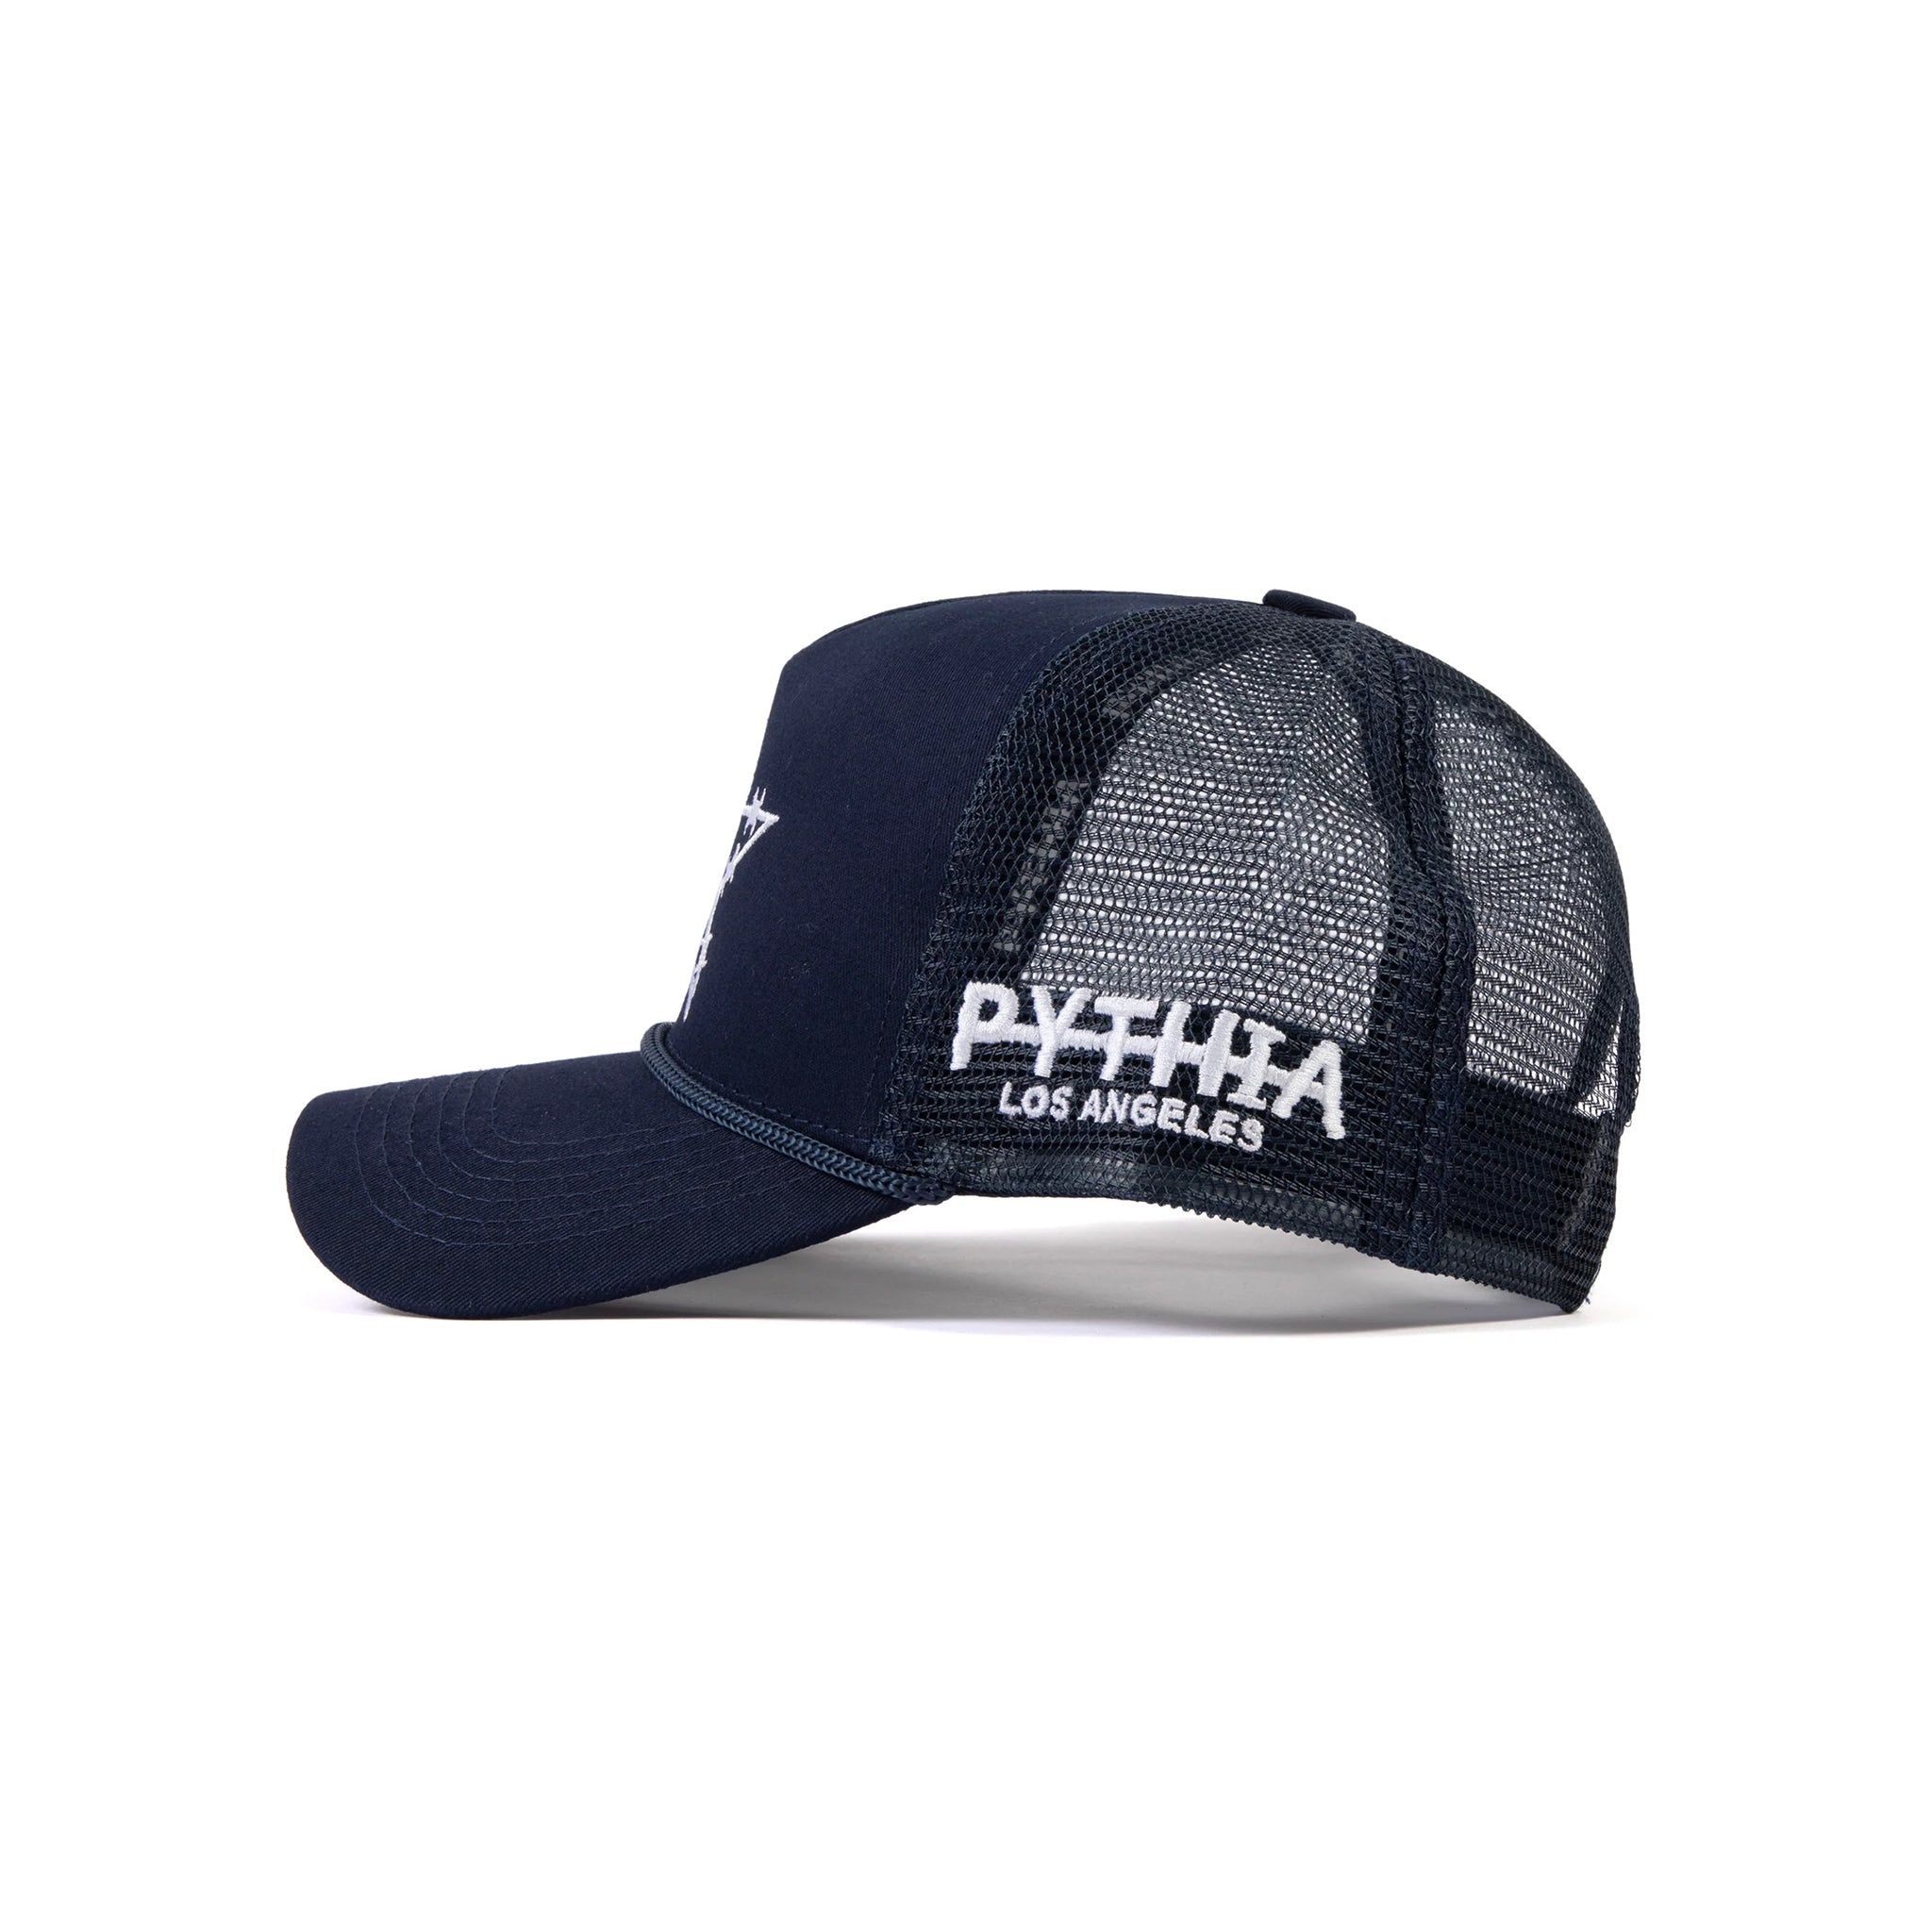 Pythia Barbwire Star Trucker Navy Hat